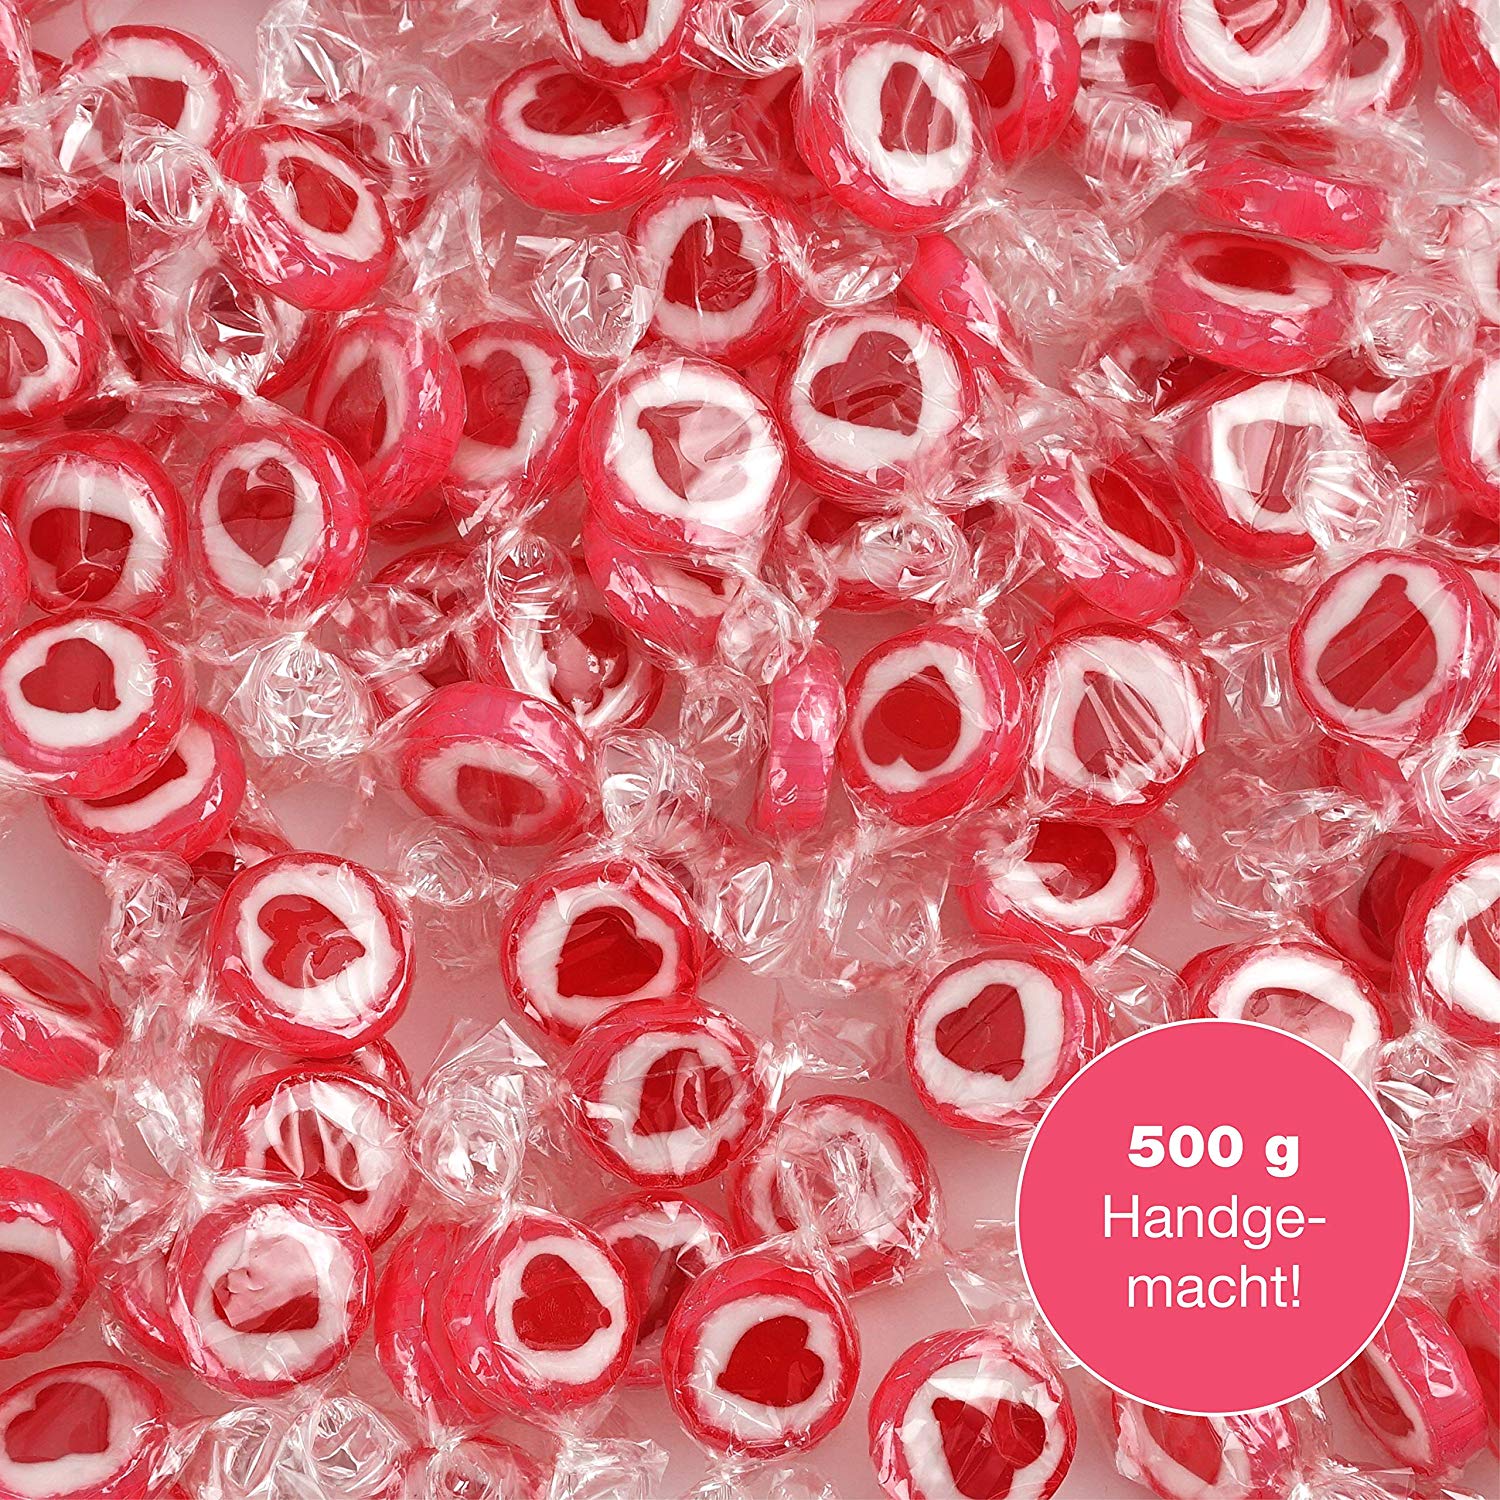 Caramelos con dibujo de corazón rojos y blancos rocks. Para decoración dulce de una mesa de bodas, bautizos, comuniones o día de San Valentín (500 GR) con corazón rojo